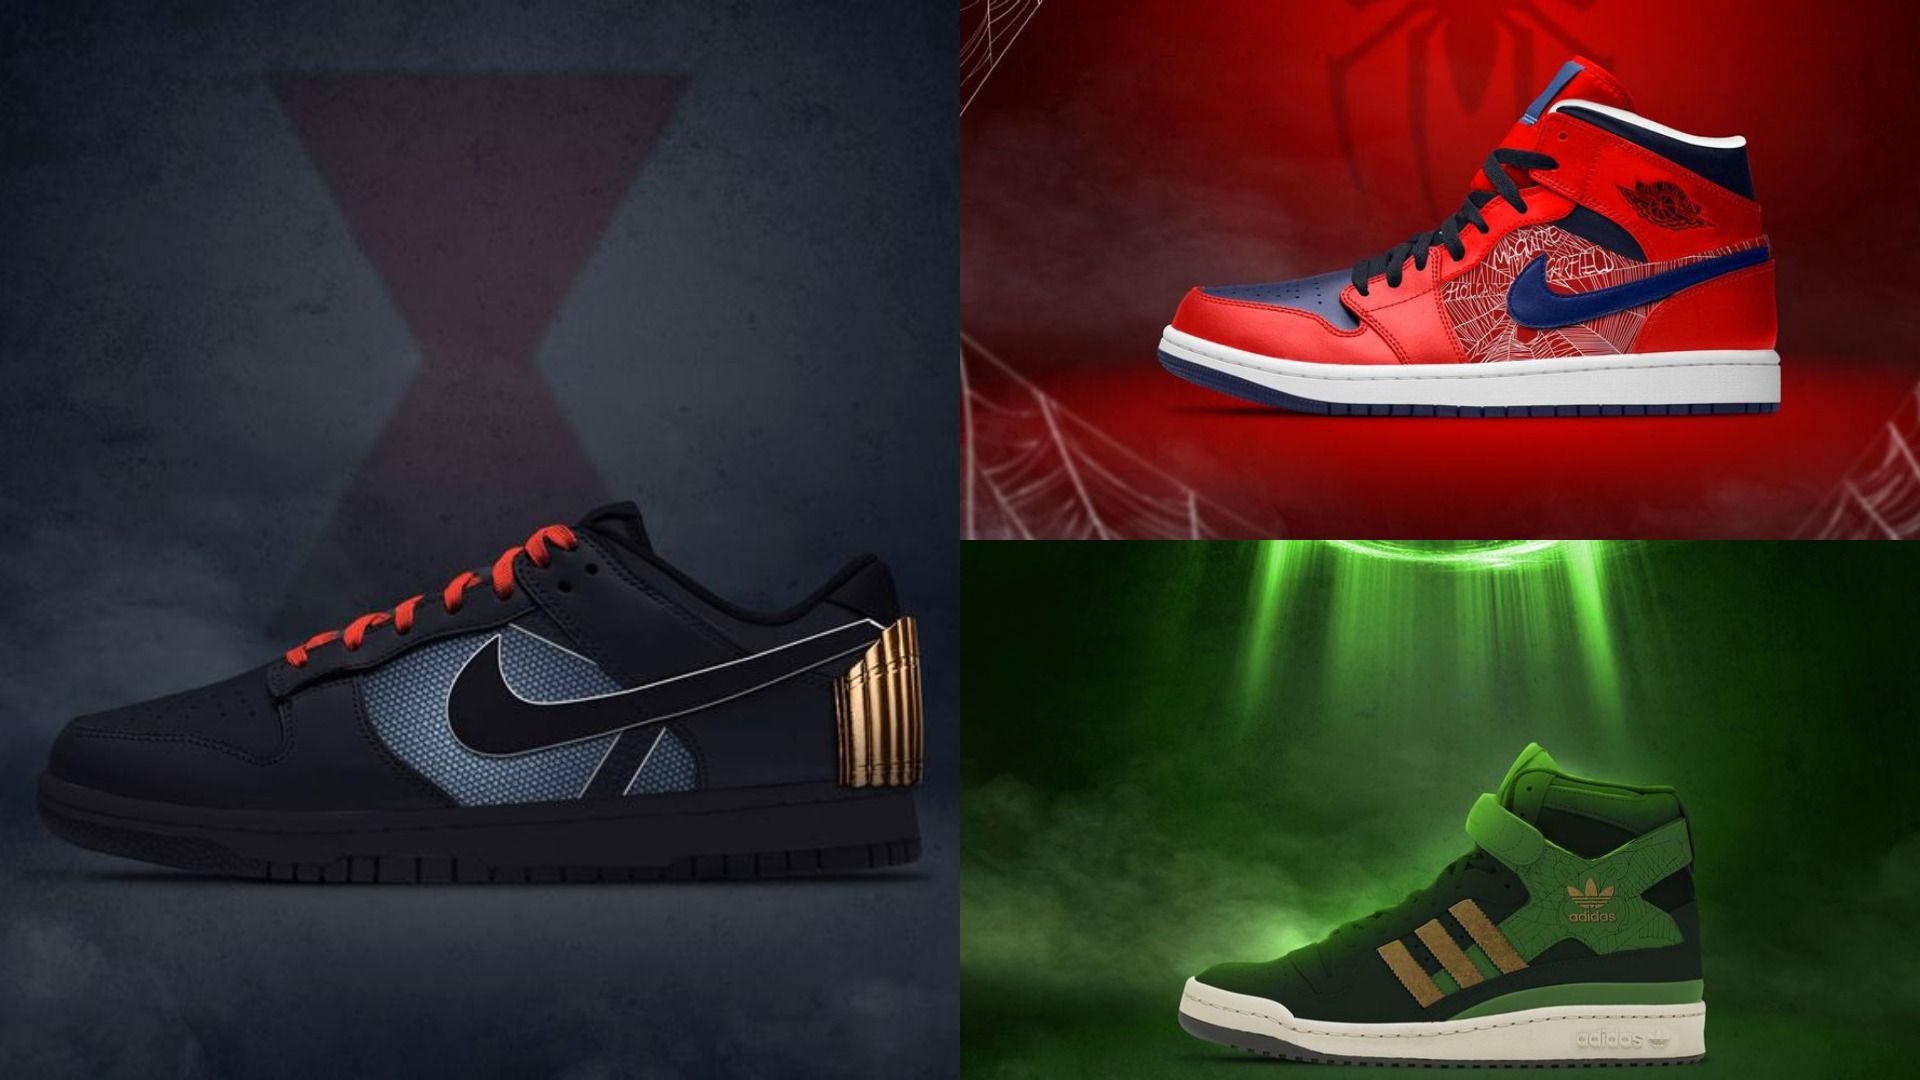 Mariscos En honor Instituto Así son las zapatillas de Adidas y Nike inspiradas en Spider-Man, Loki,  Viuda Negra y Ant-Man - Vandal Random